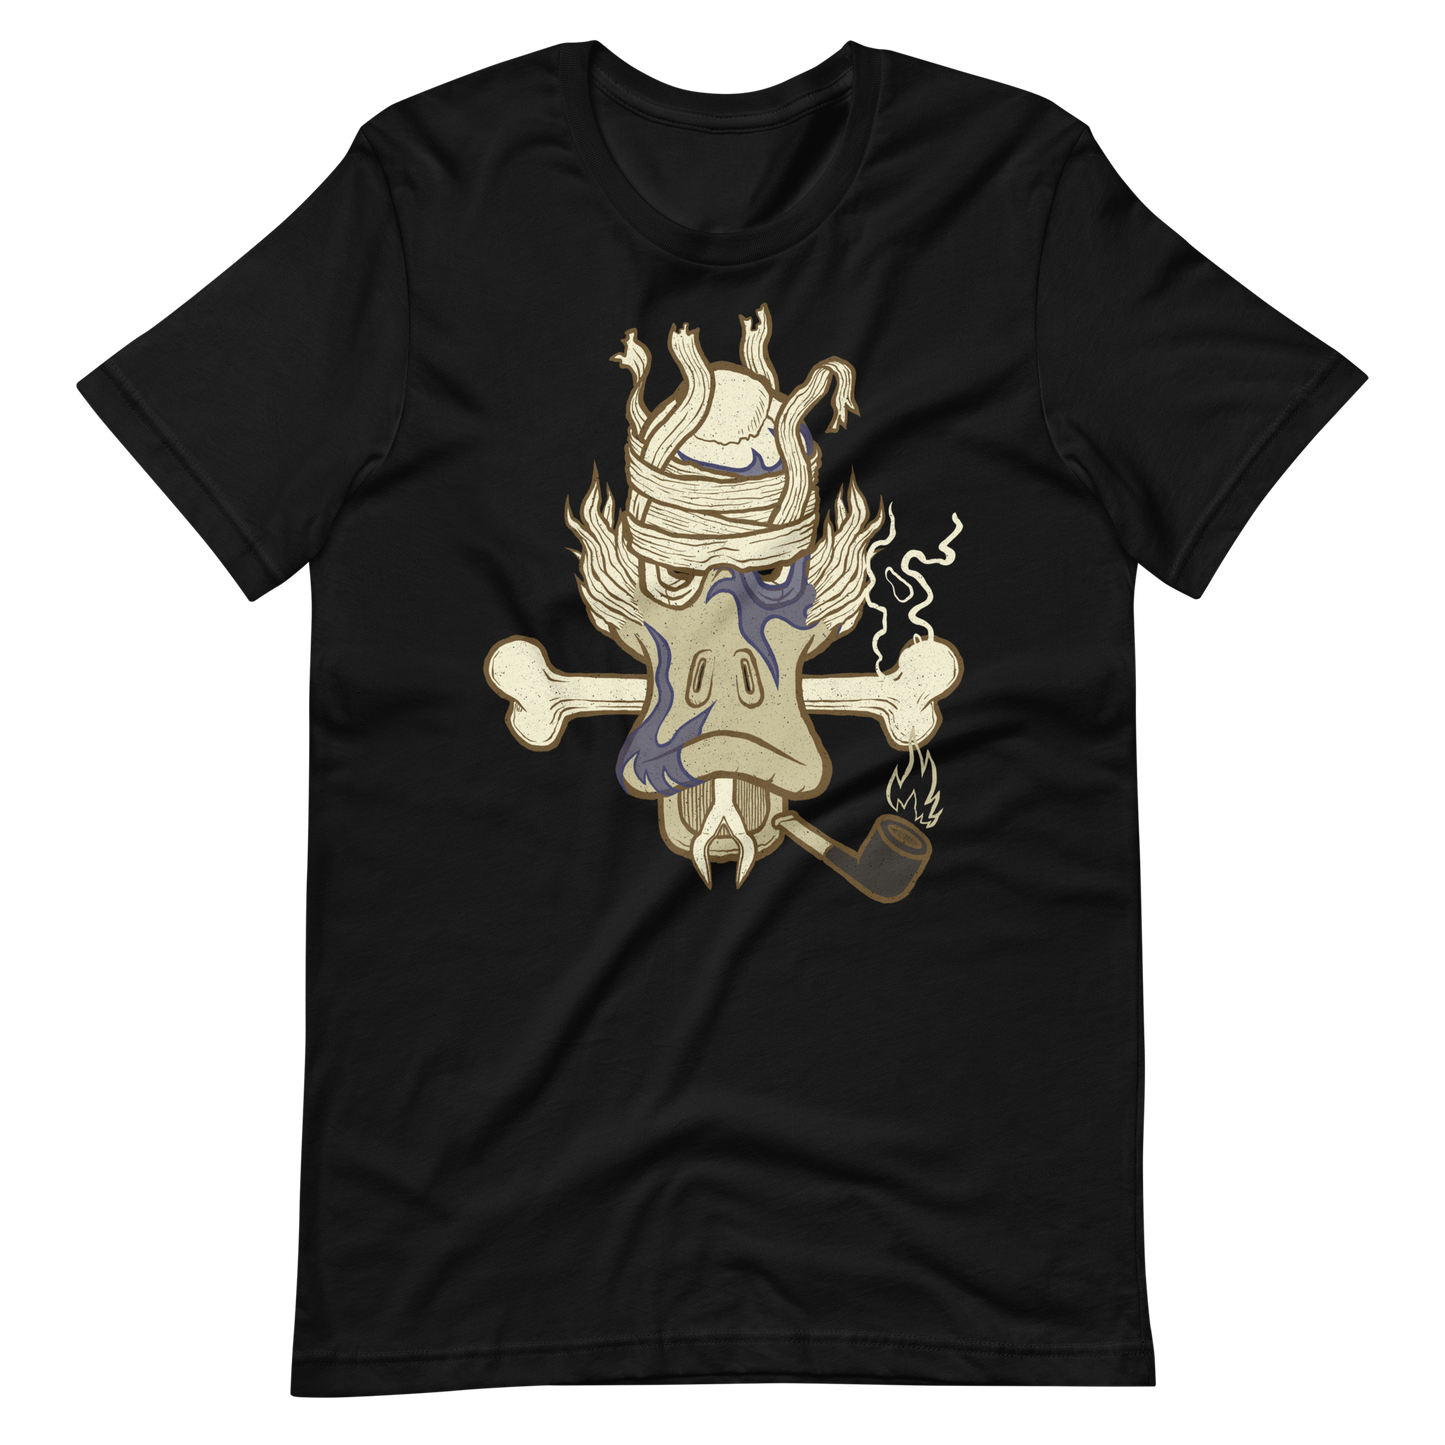 No 004 Wierd Duck Skull collection t-shirt